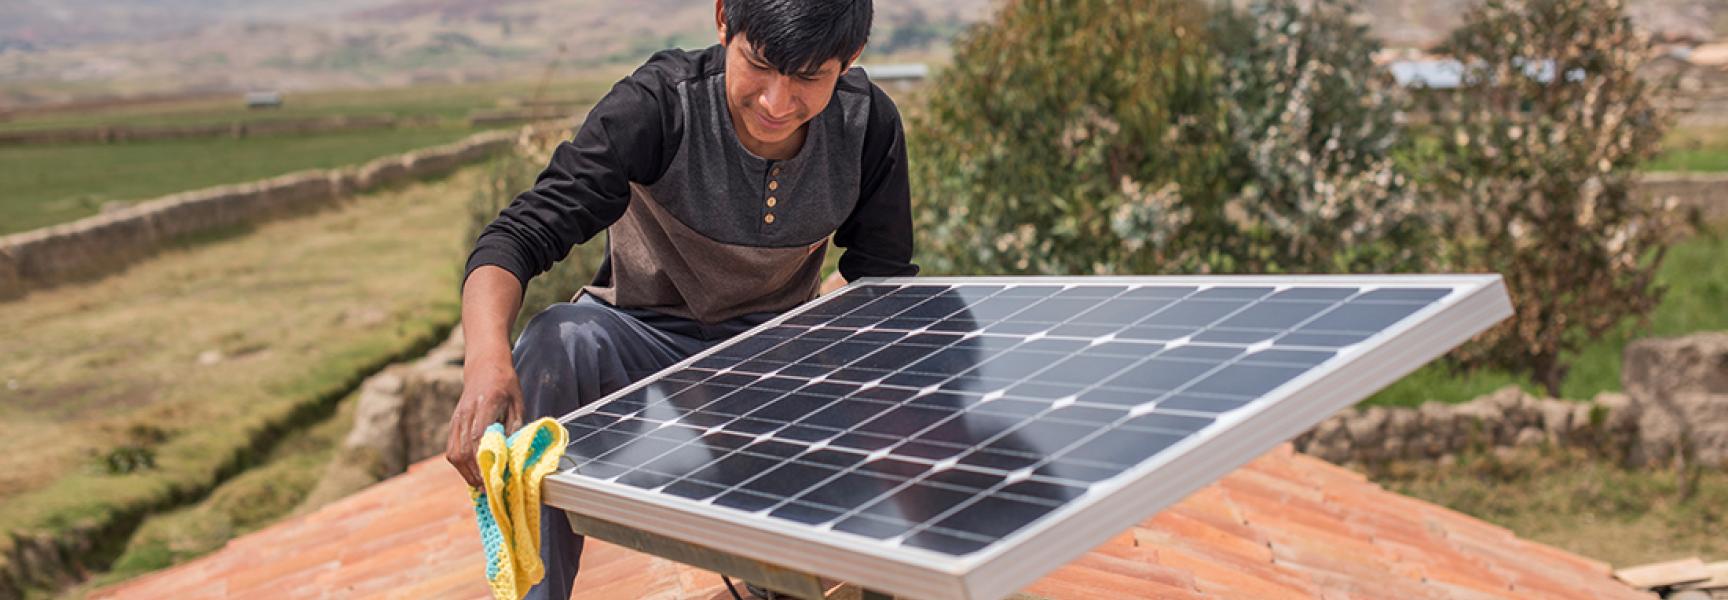 Une personne installant un panneau solaire au Pérou